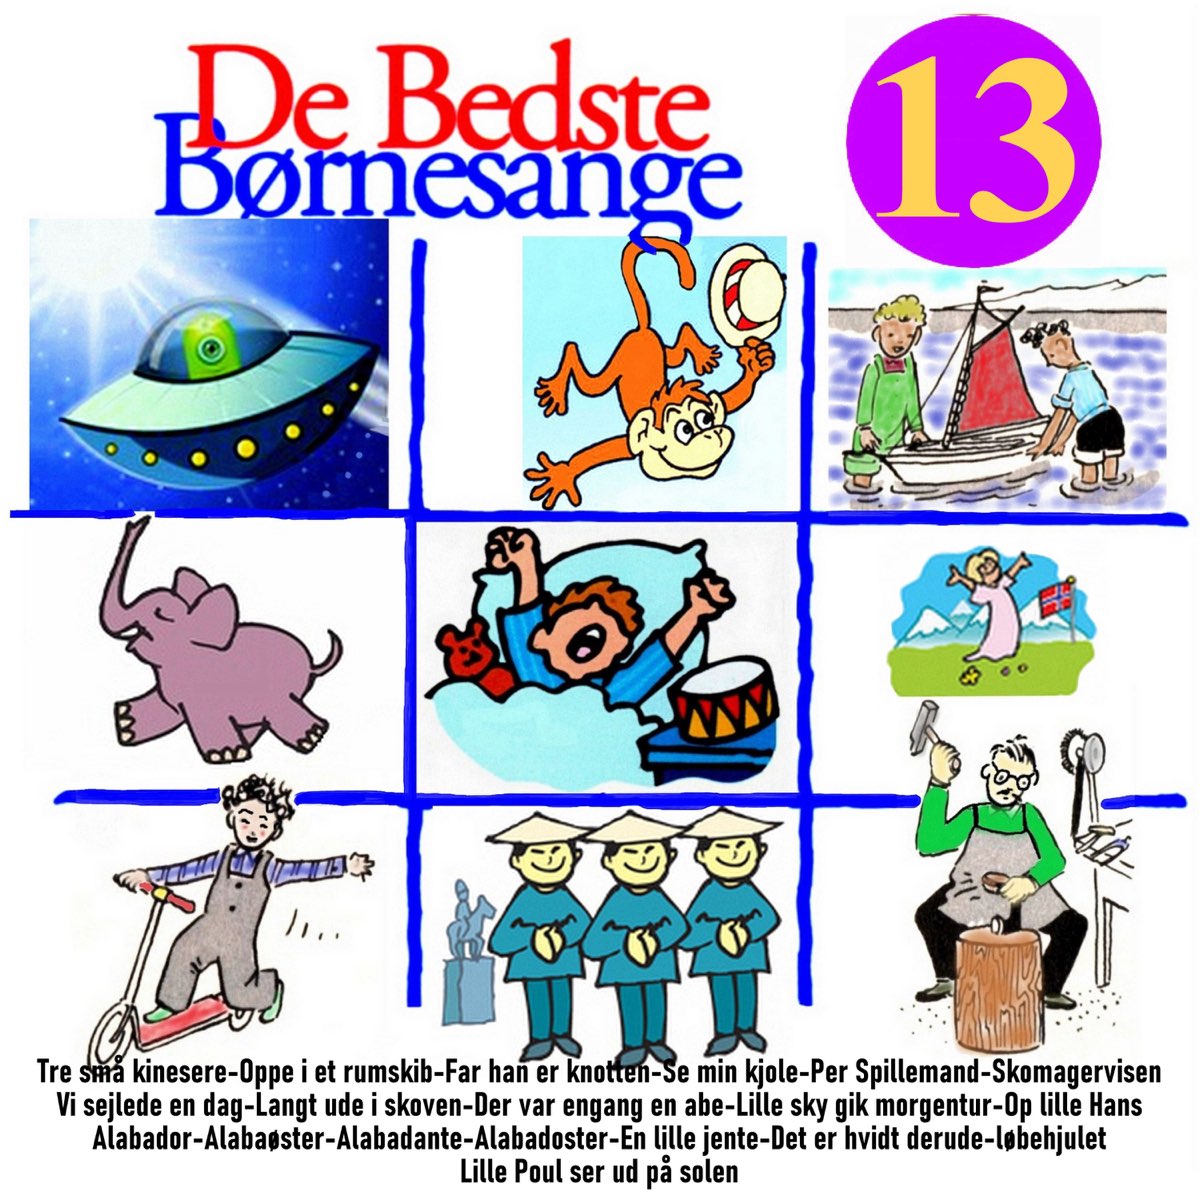 De Bedste Børnesange Vol. 13 - Album by Birgitte Grimstad - Apple Music